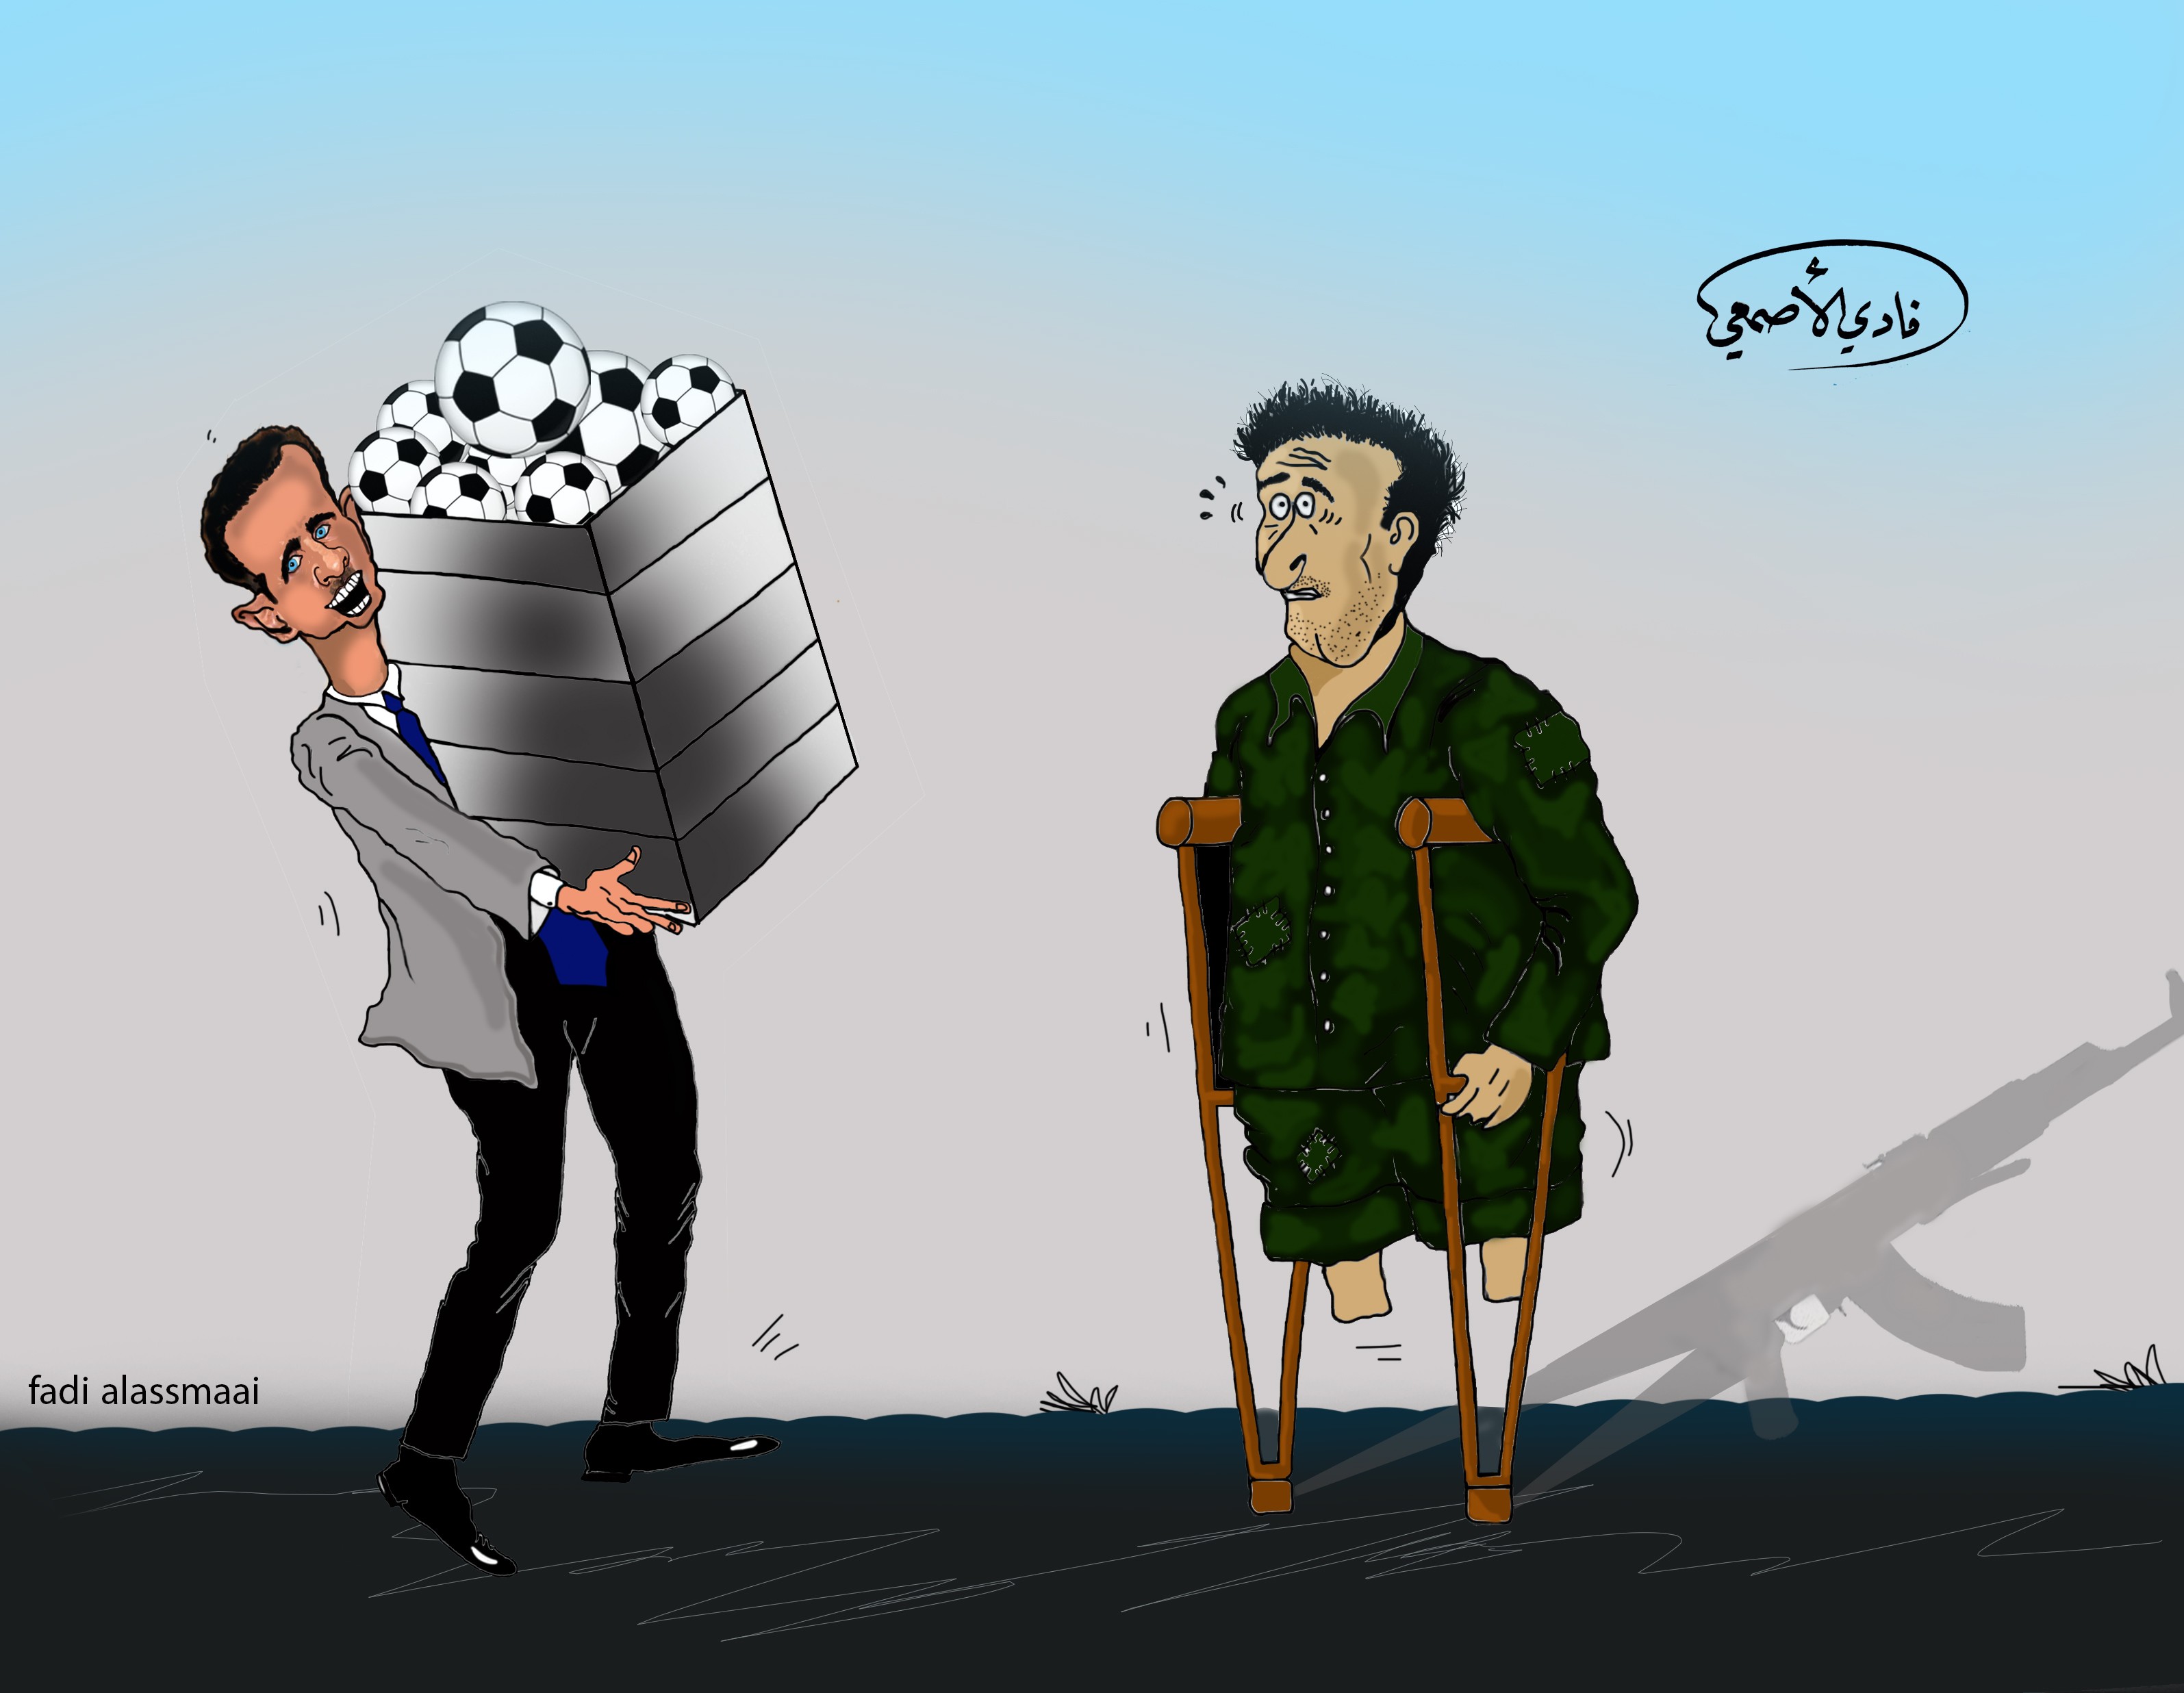 لوحة كاريكاتير بعنوان " مكافأة الأسد لجنوده" فادي الأصمعي